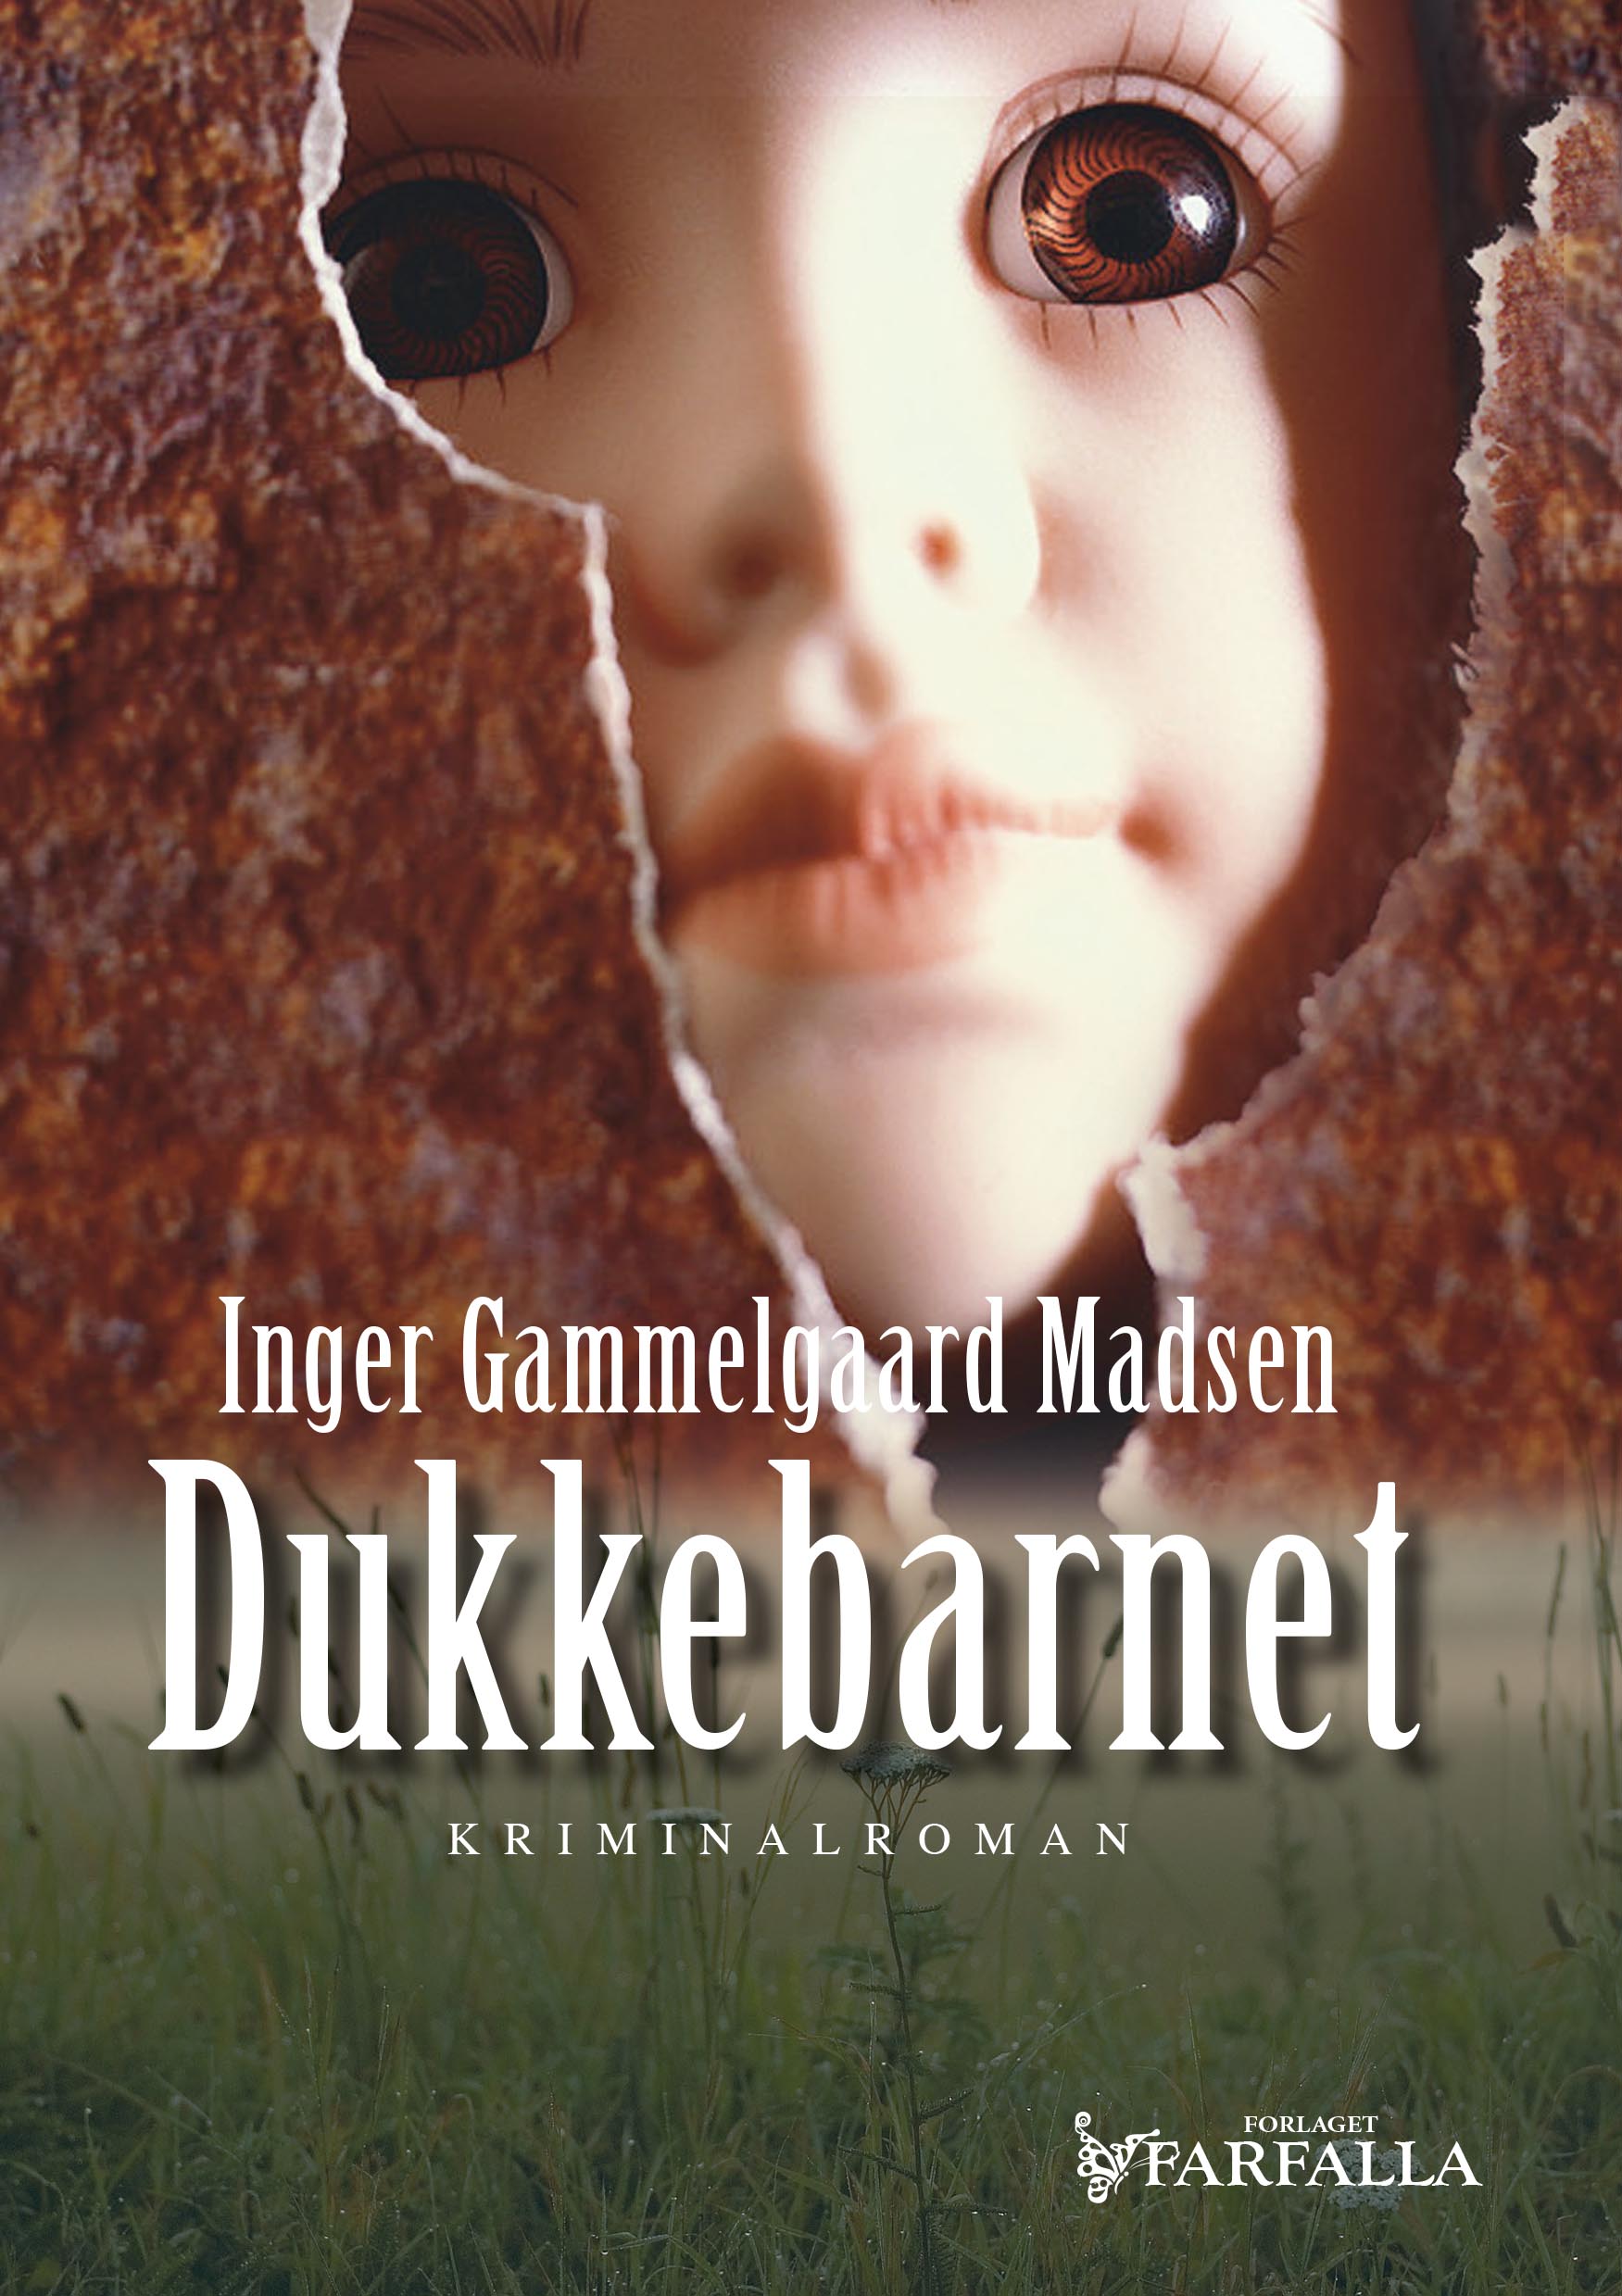 Man glemmer aldrig sin første, debut, Inger Gammelgaard Madsen, Dukkebarnet